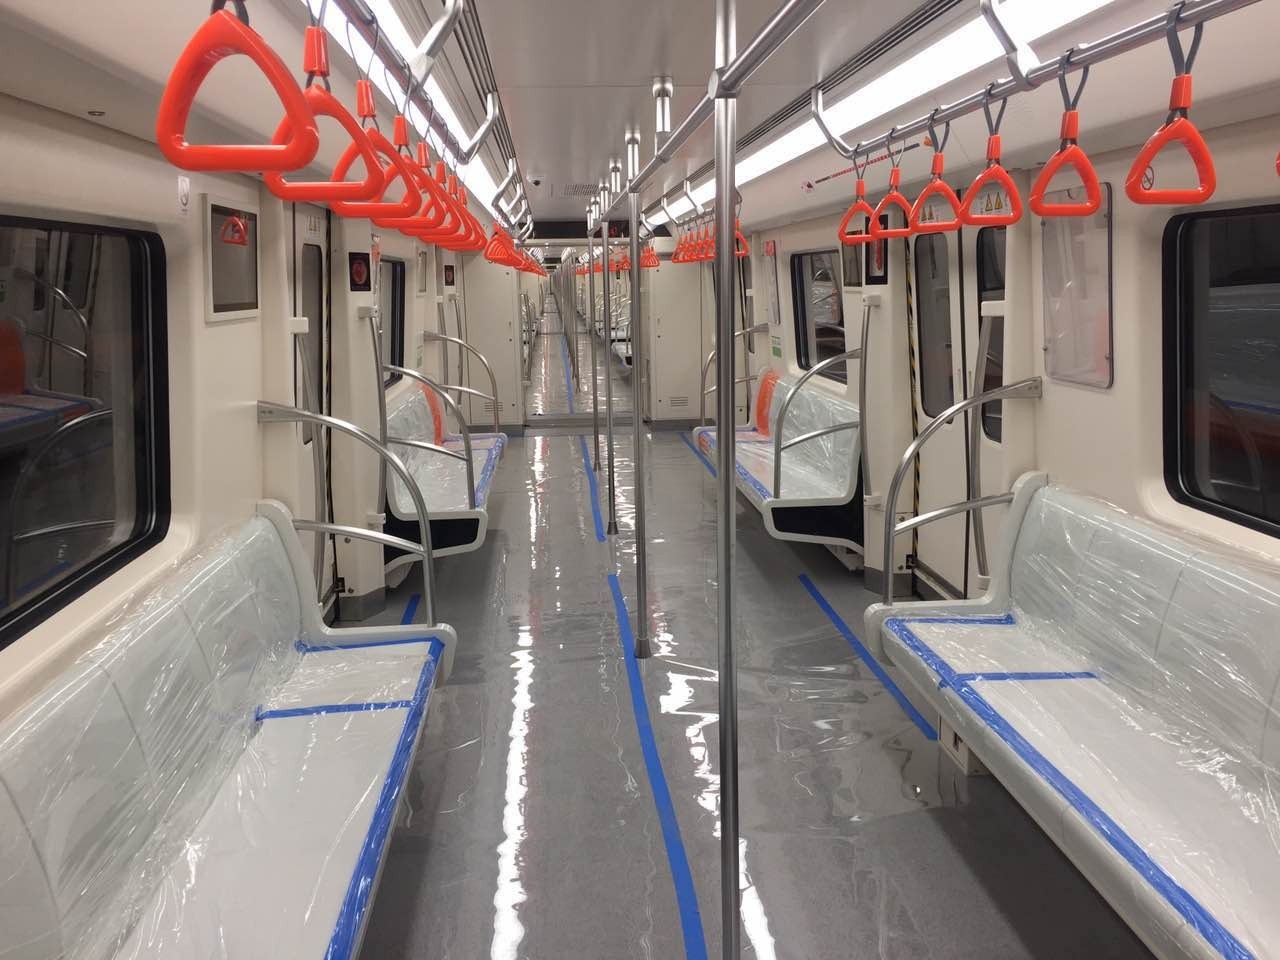 车厢内部的整体布局与地铁6号线类似,让习惯乘坐天津地铁的乘客感觉